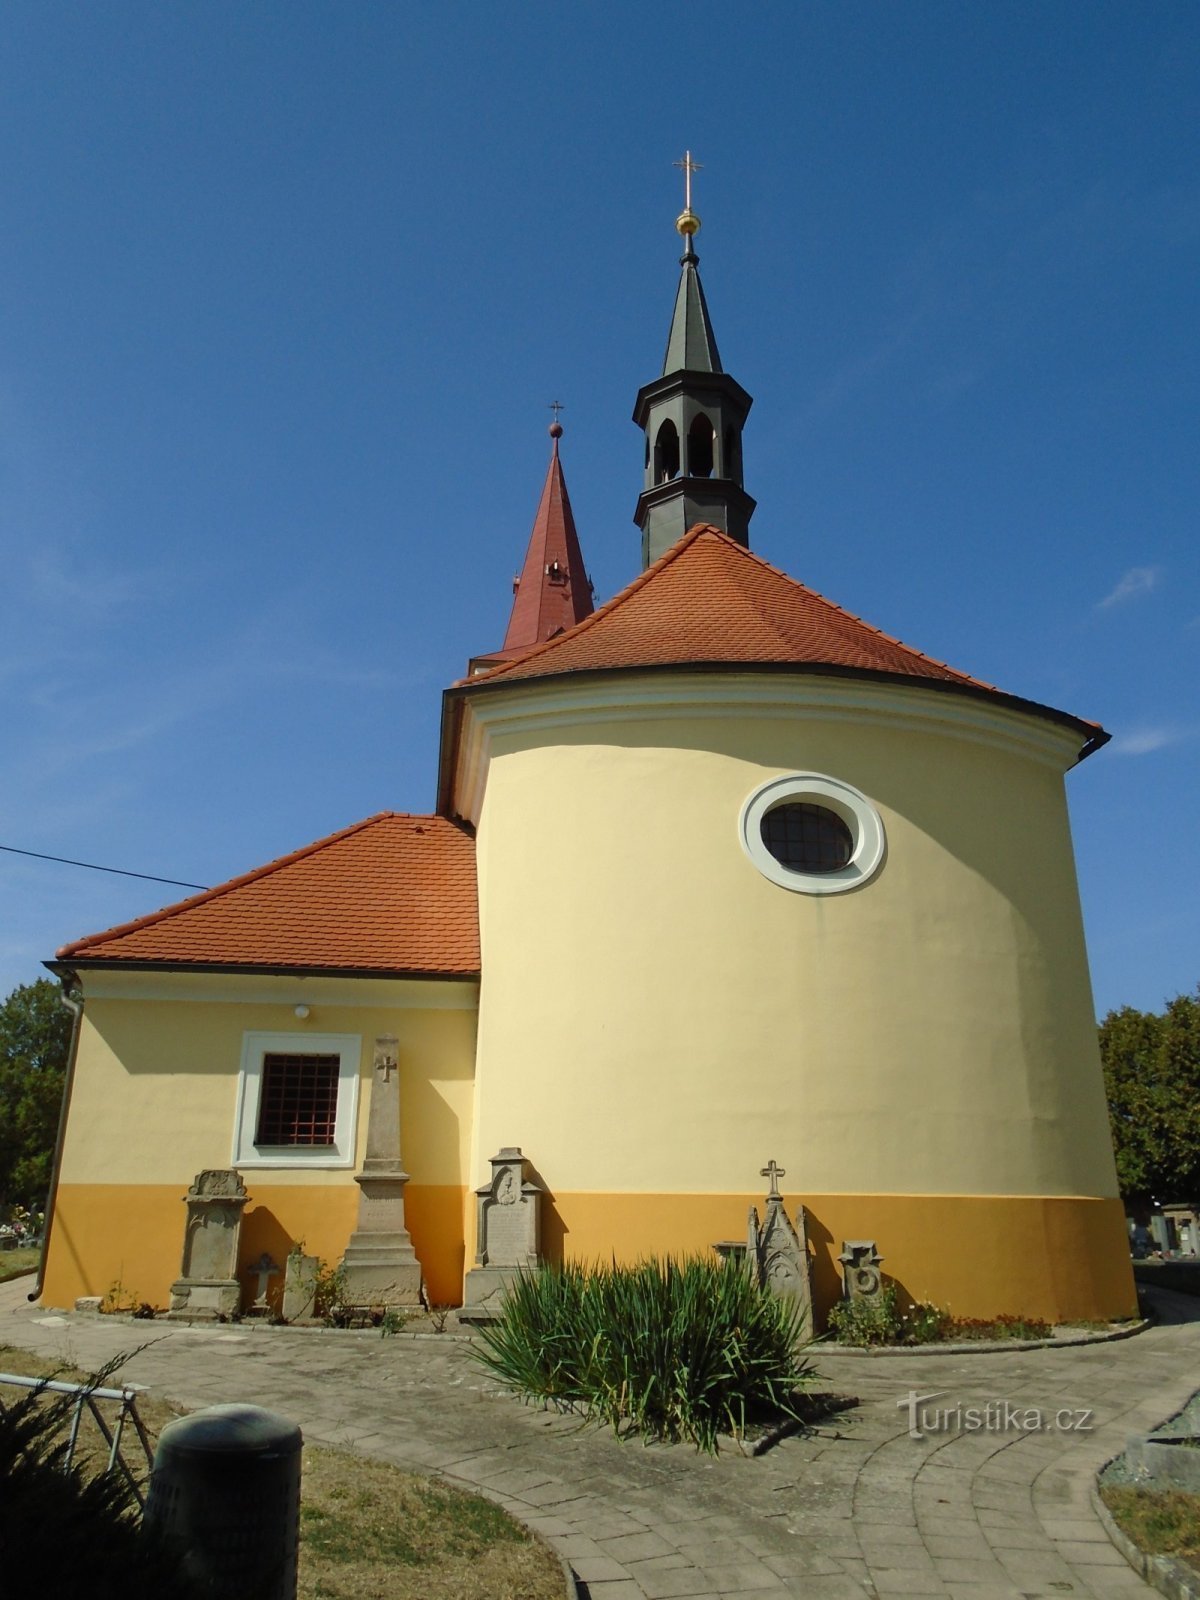 Église de St. George le Martyr (Jasenna)